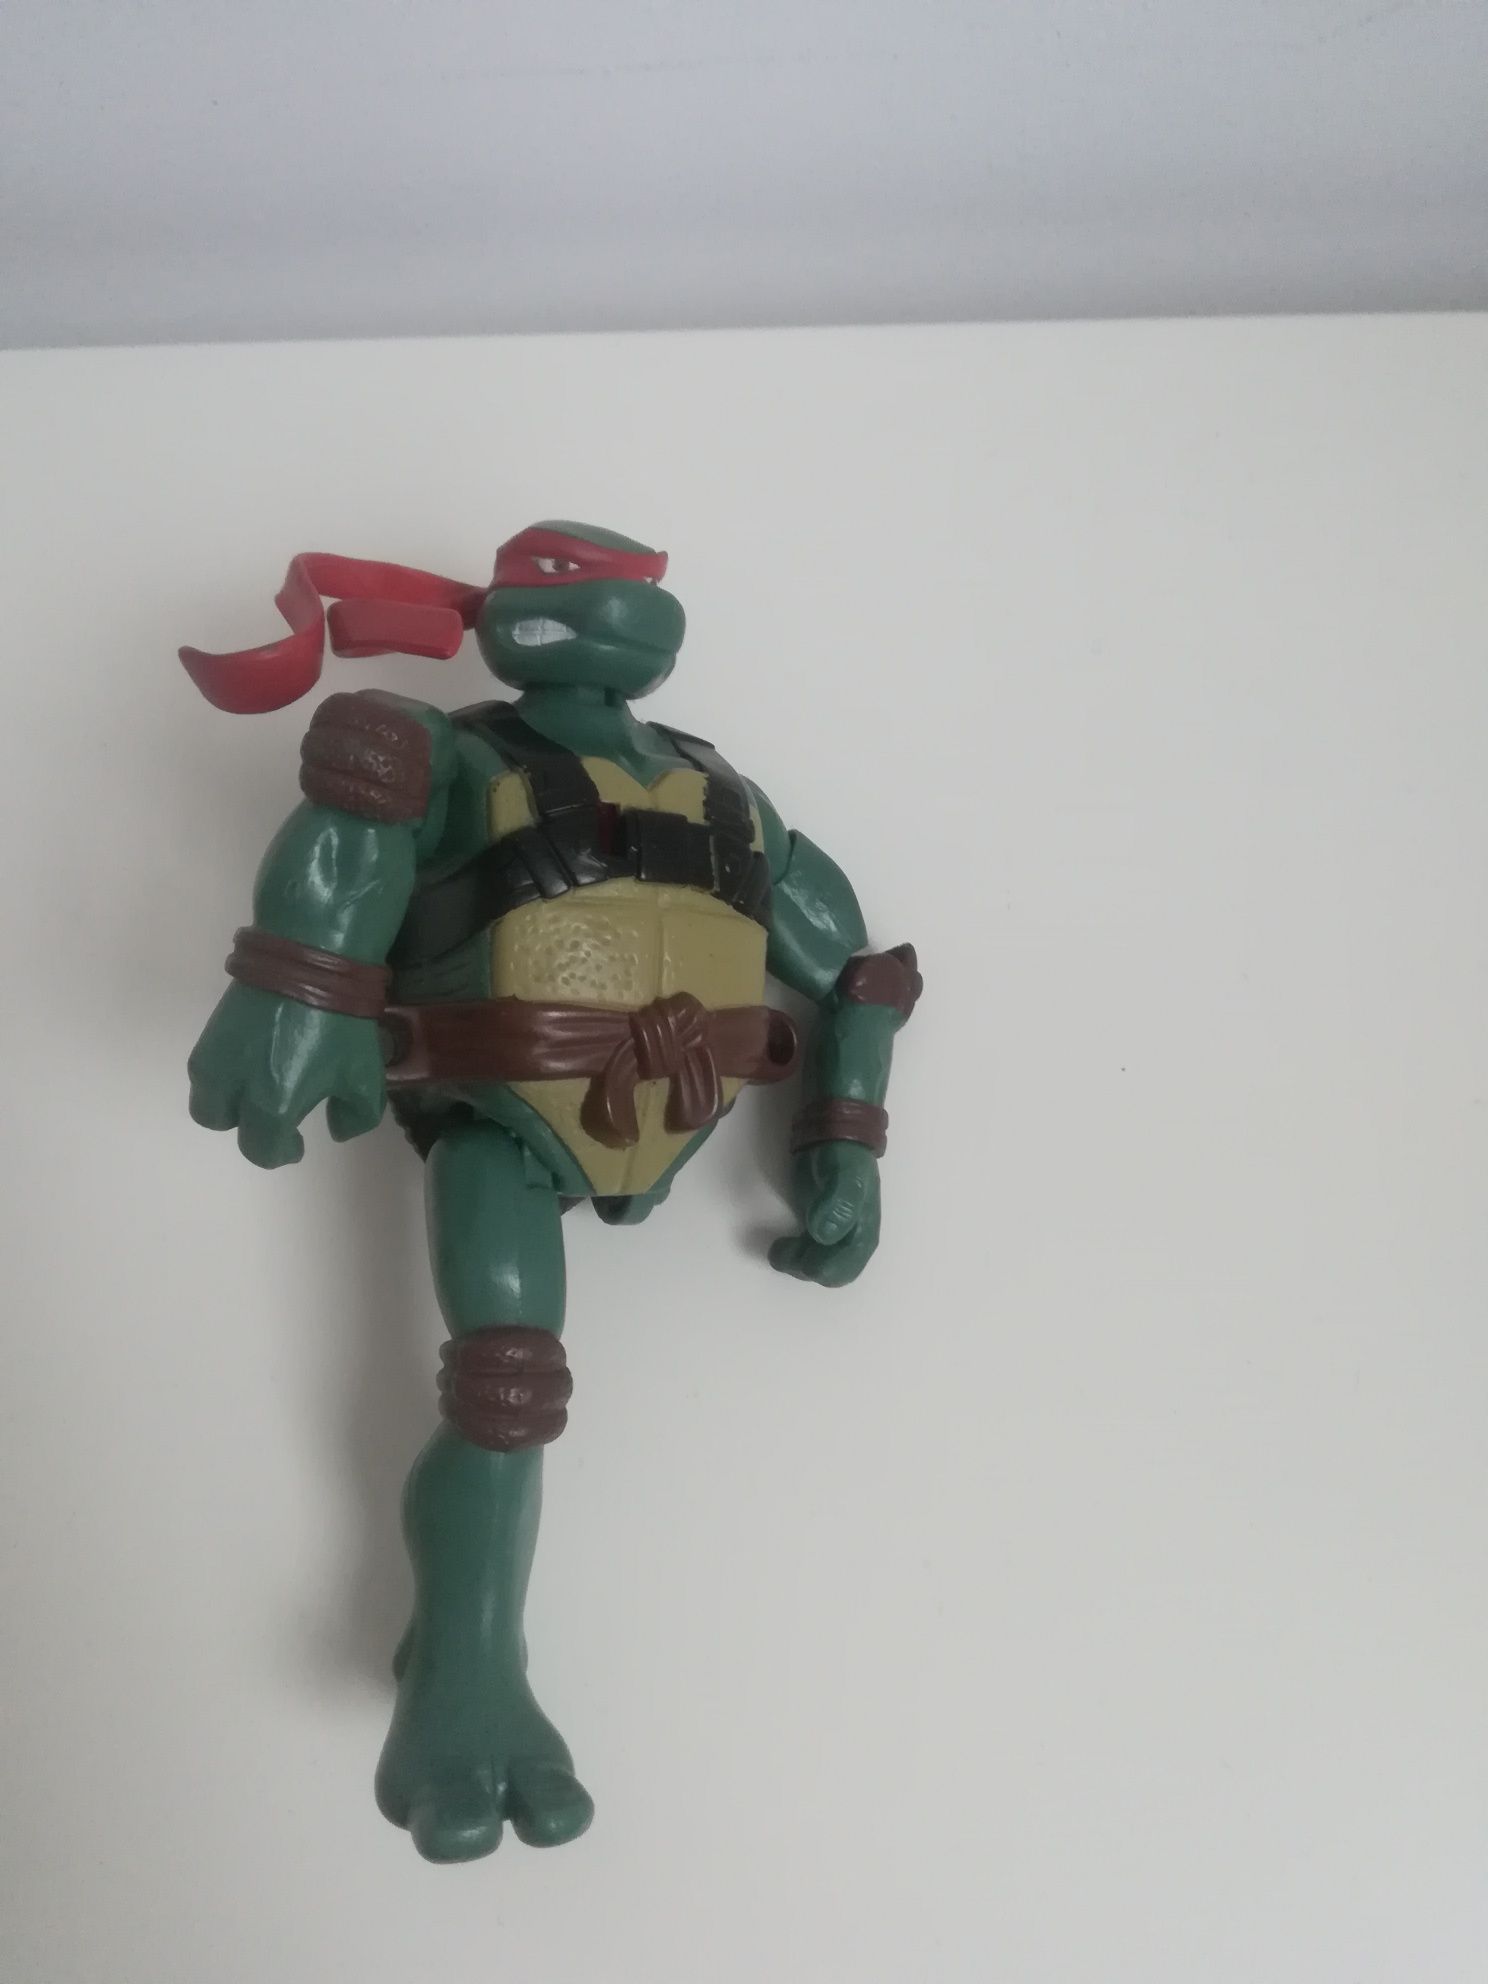 Michael Angelo wojownicze żółwie ninja turtles 18cm.